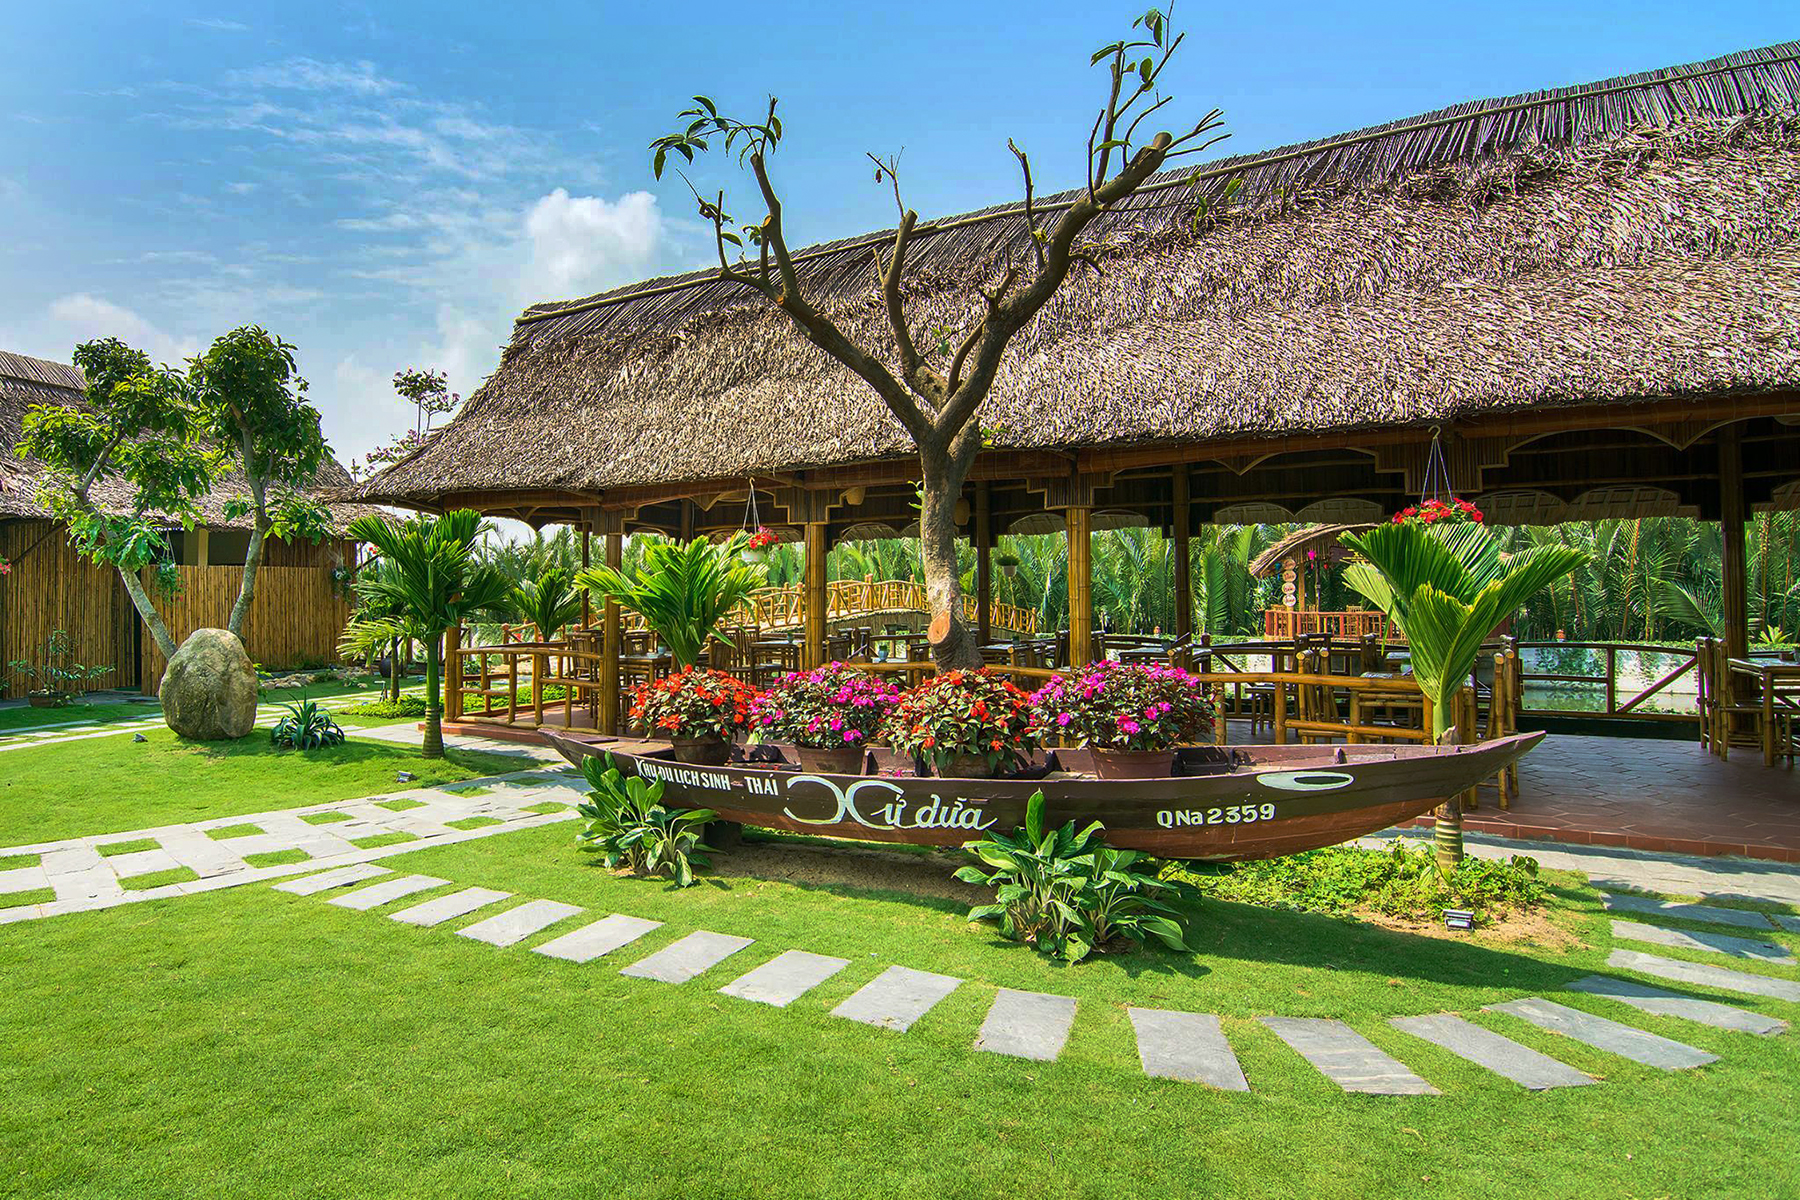 Du lịch Hội An: Khu du lịch sinh thái Xứ Dừa | Yeudulich